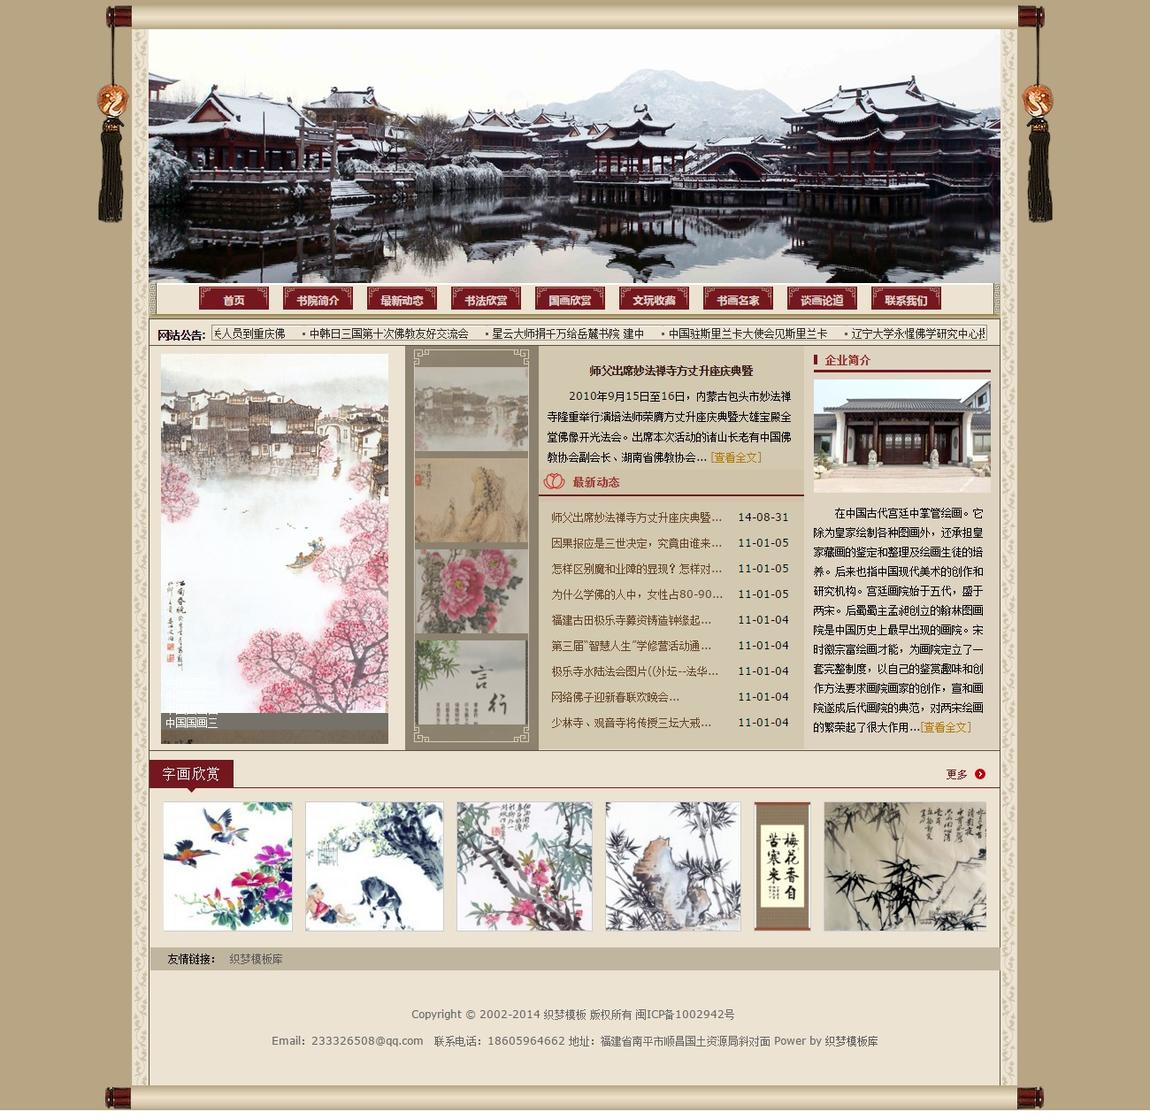 中国风文学校书画艺术古色古香类企业演示截图